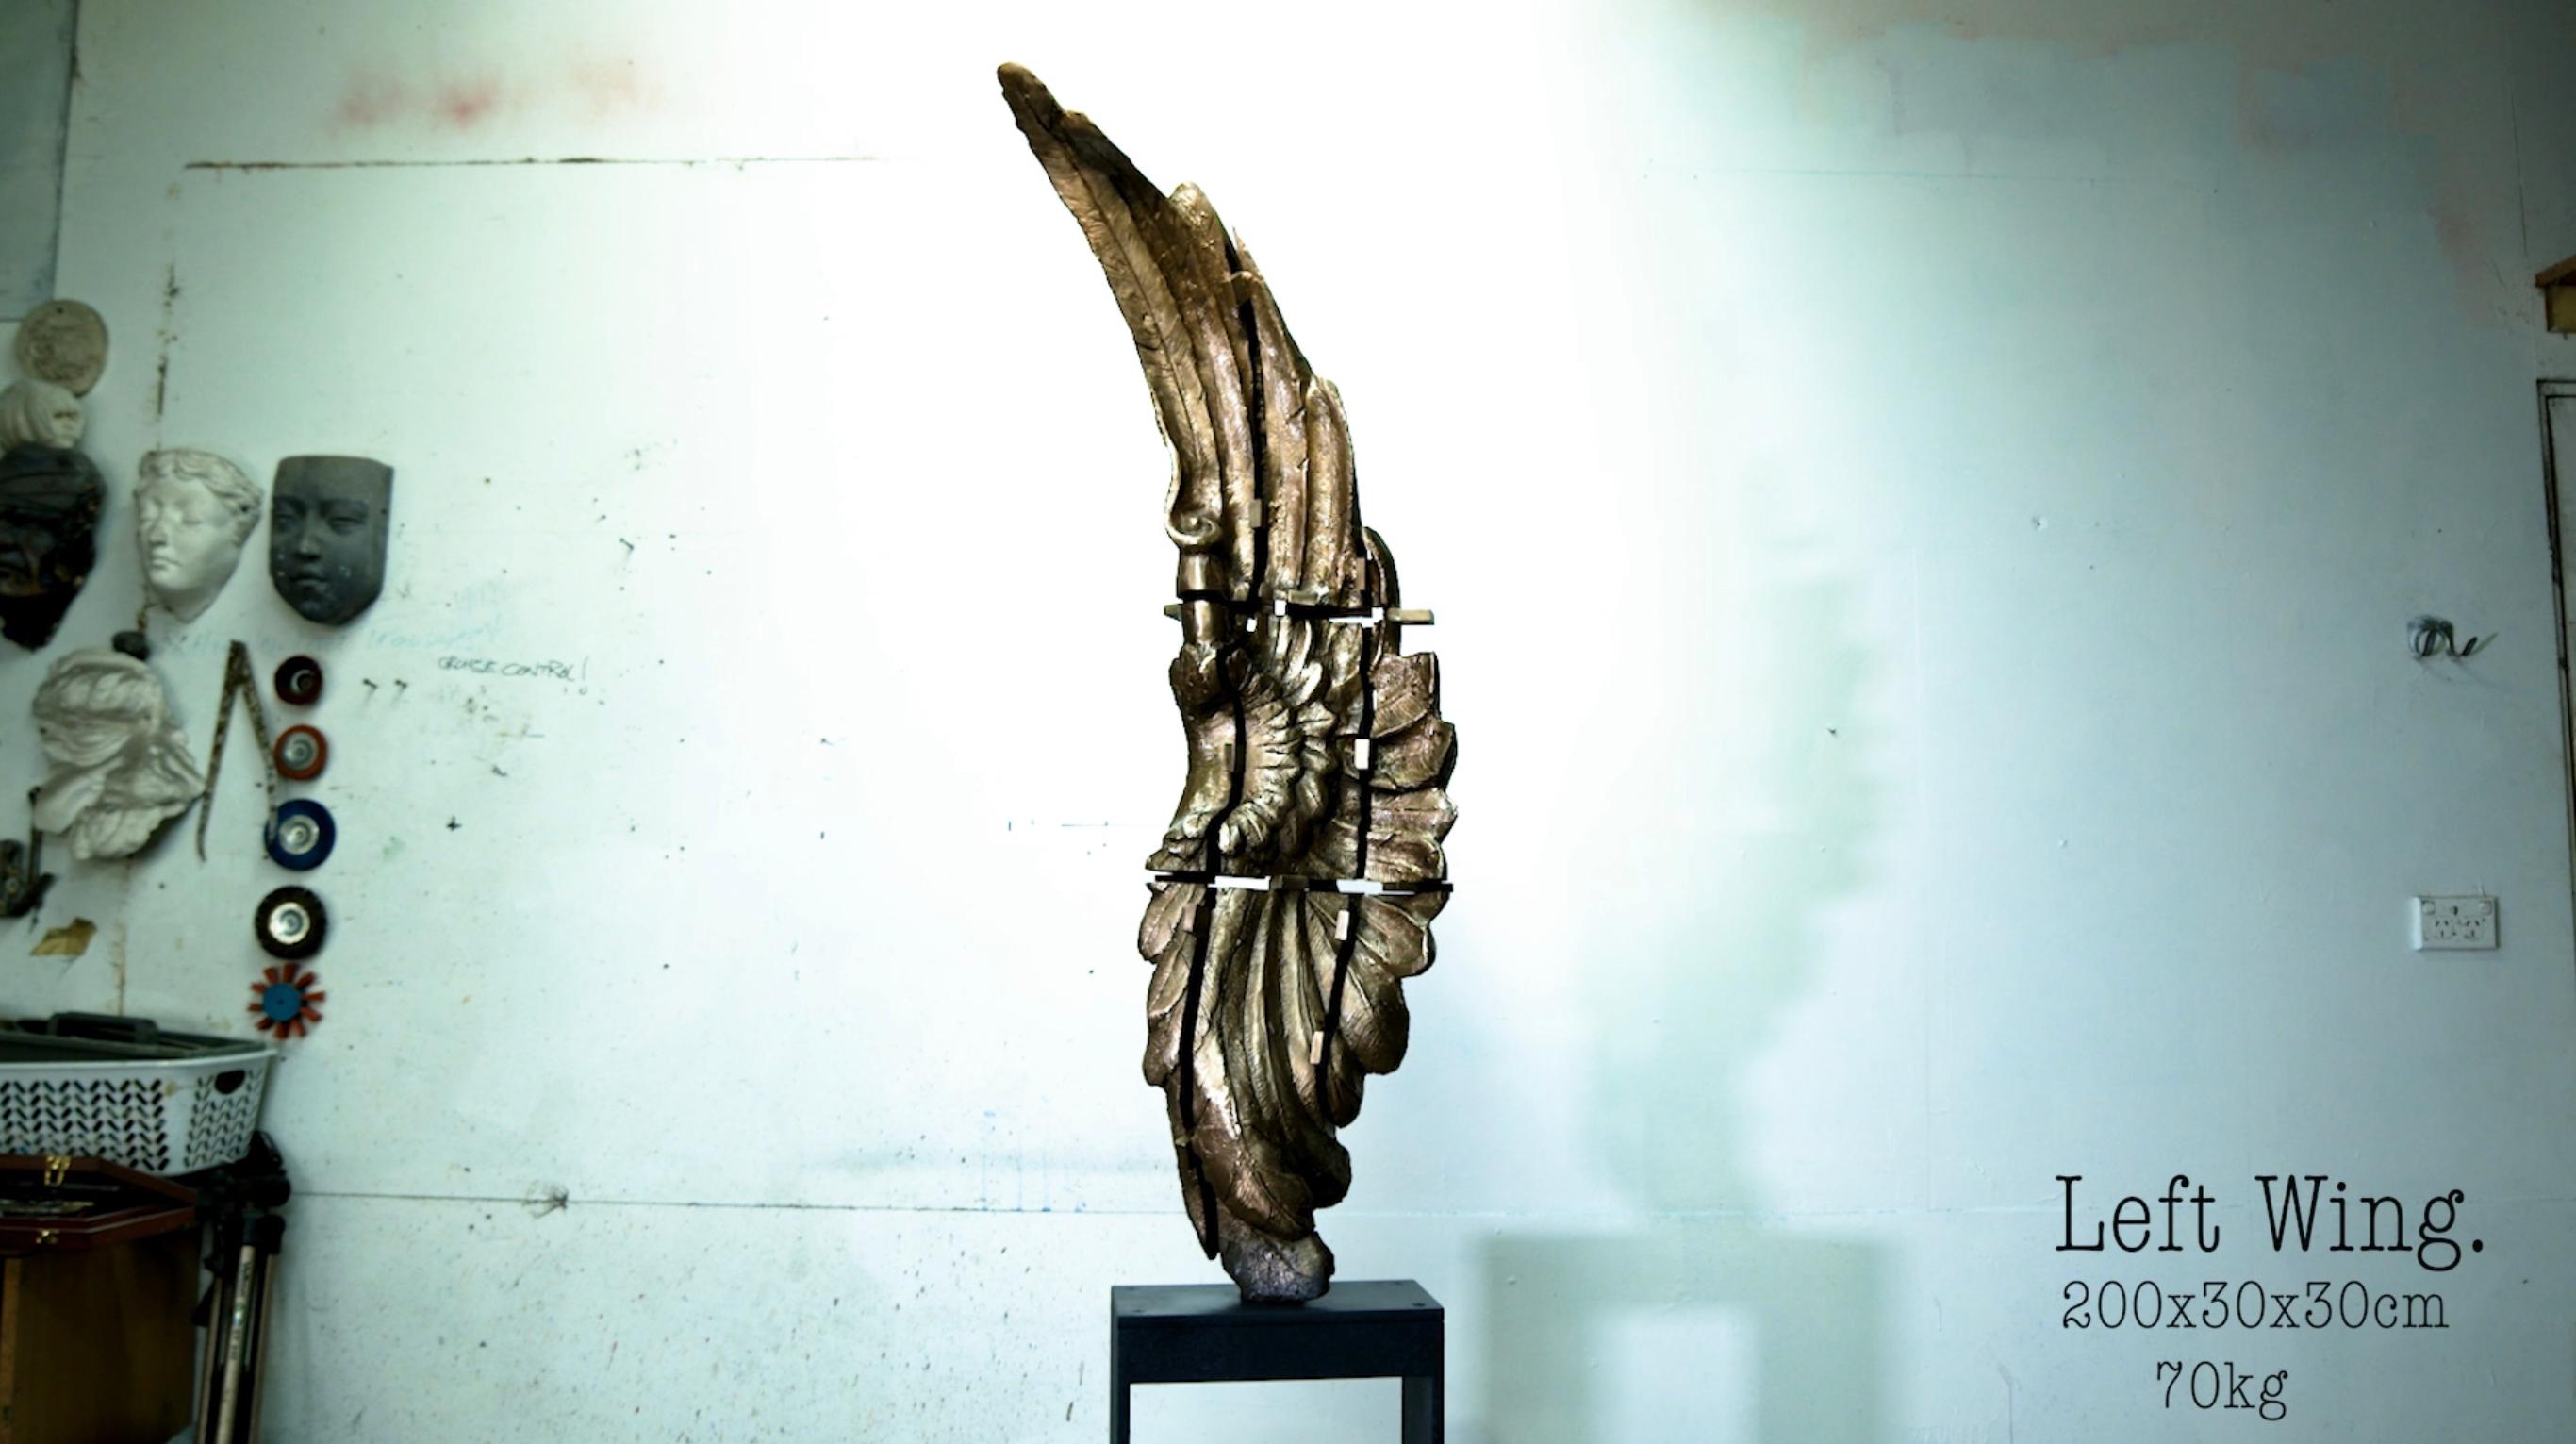 Stephen Glassborow Figurative Sculpture – Split Wing, Zeitgenössische Bronzeskulptur auf Stahlsockel